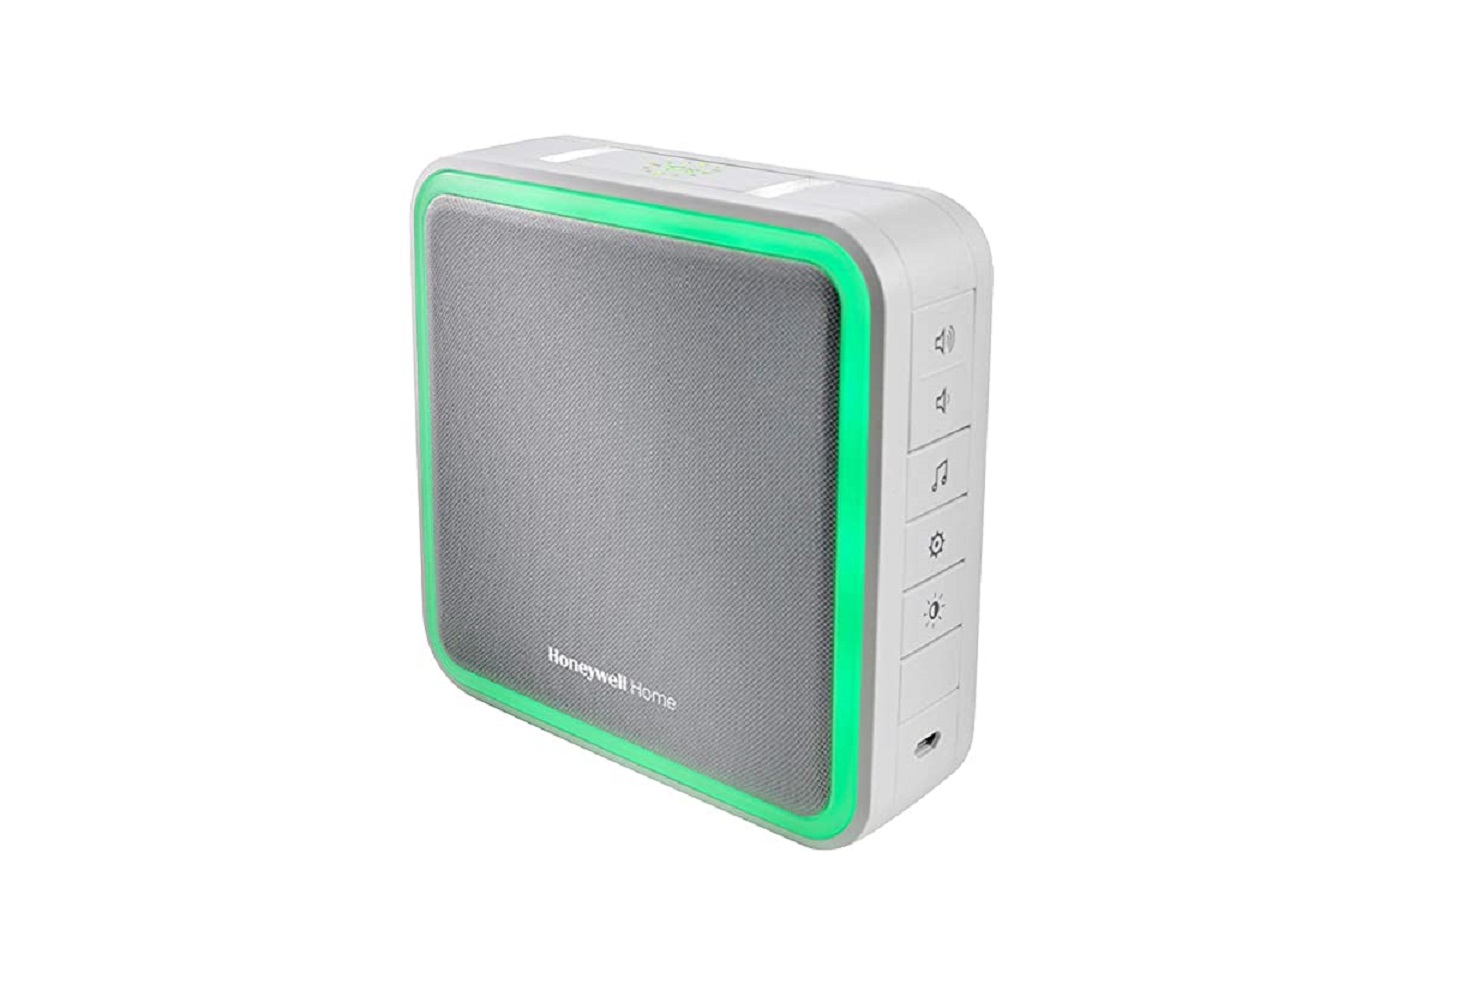 Honeywell Home DC515XX Wireless Doorbell Kit ActivLink User Guide